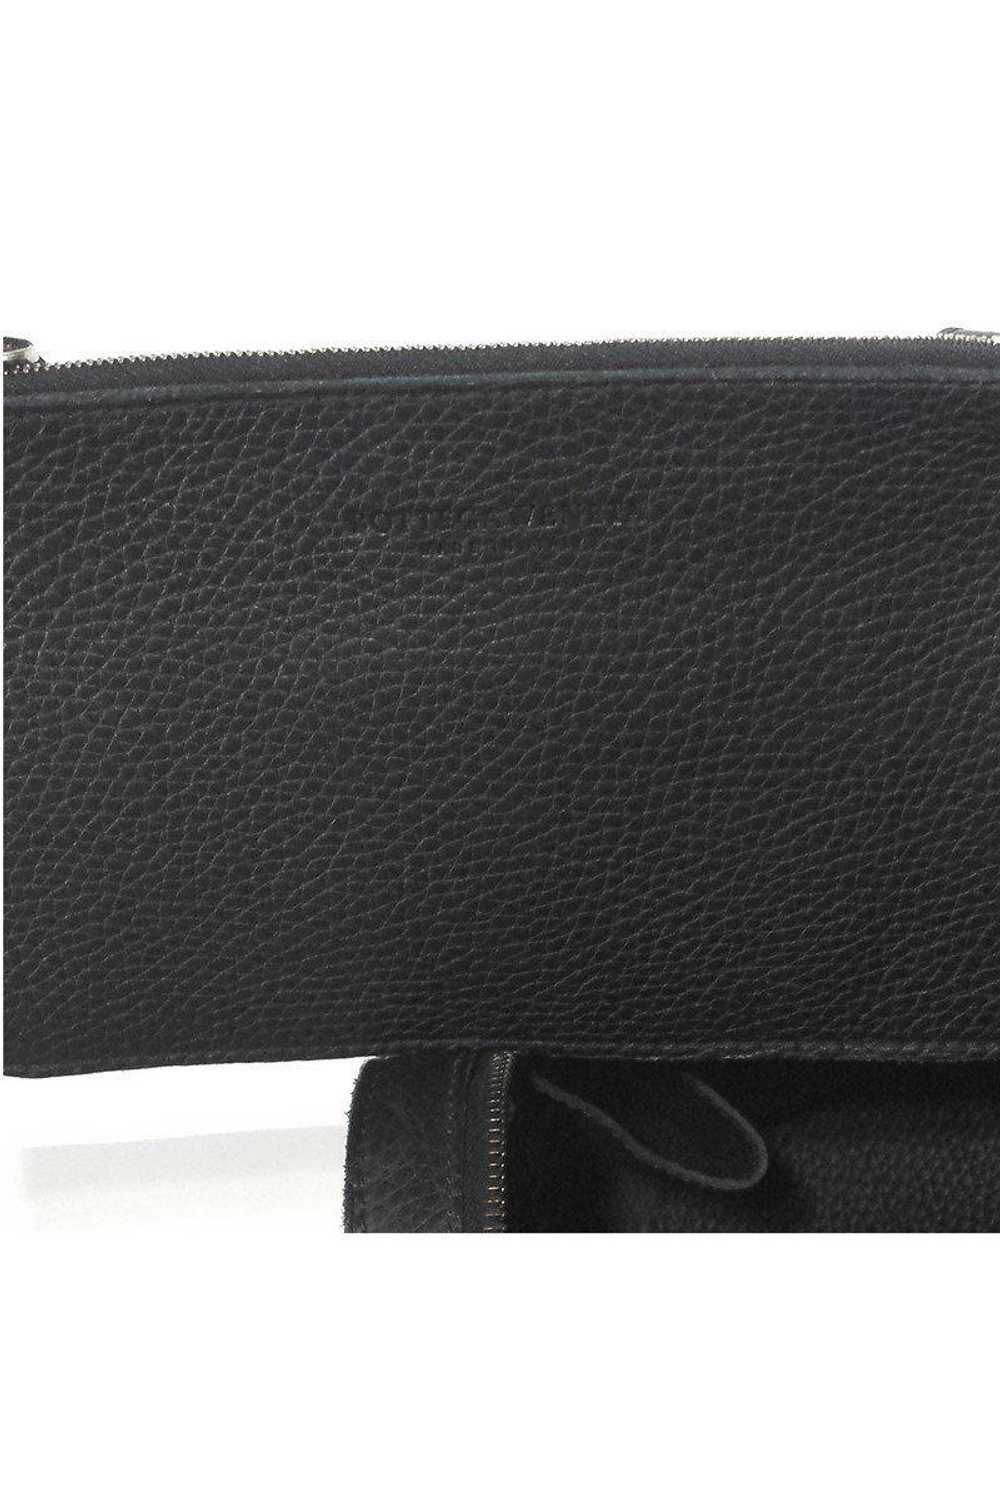 Bottega Veneta - Black Pebbled Leather Handbag - image 6